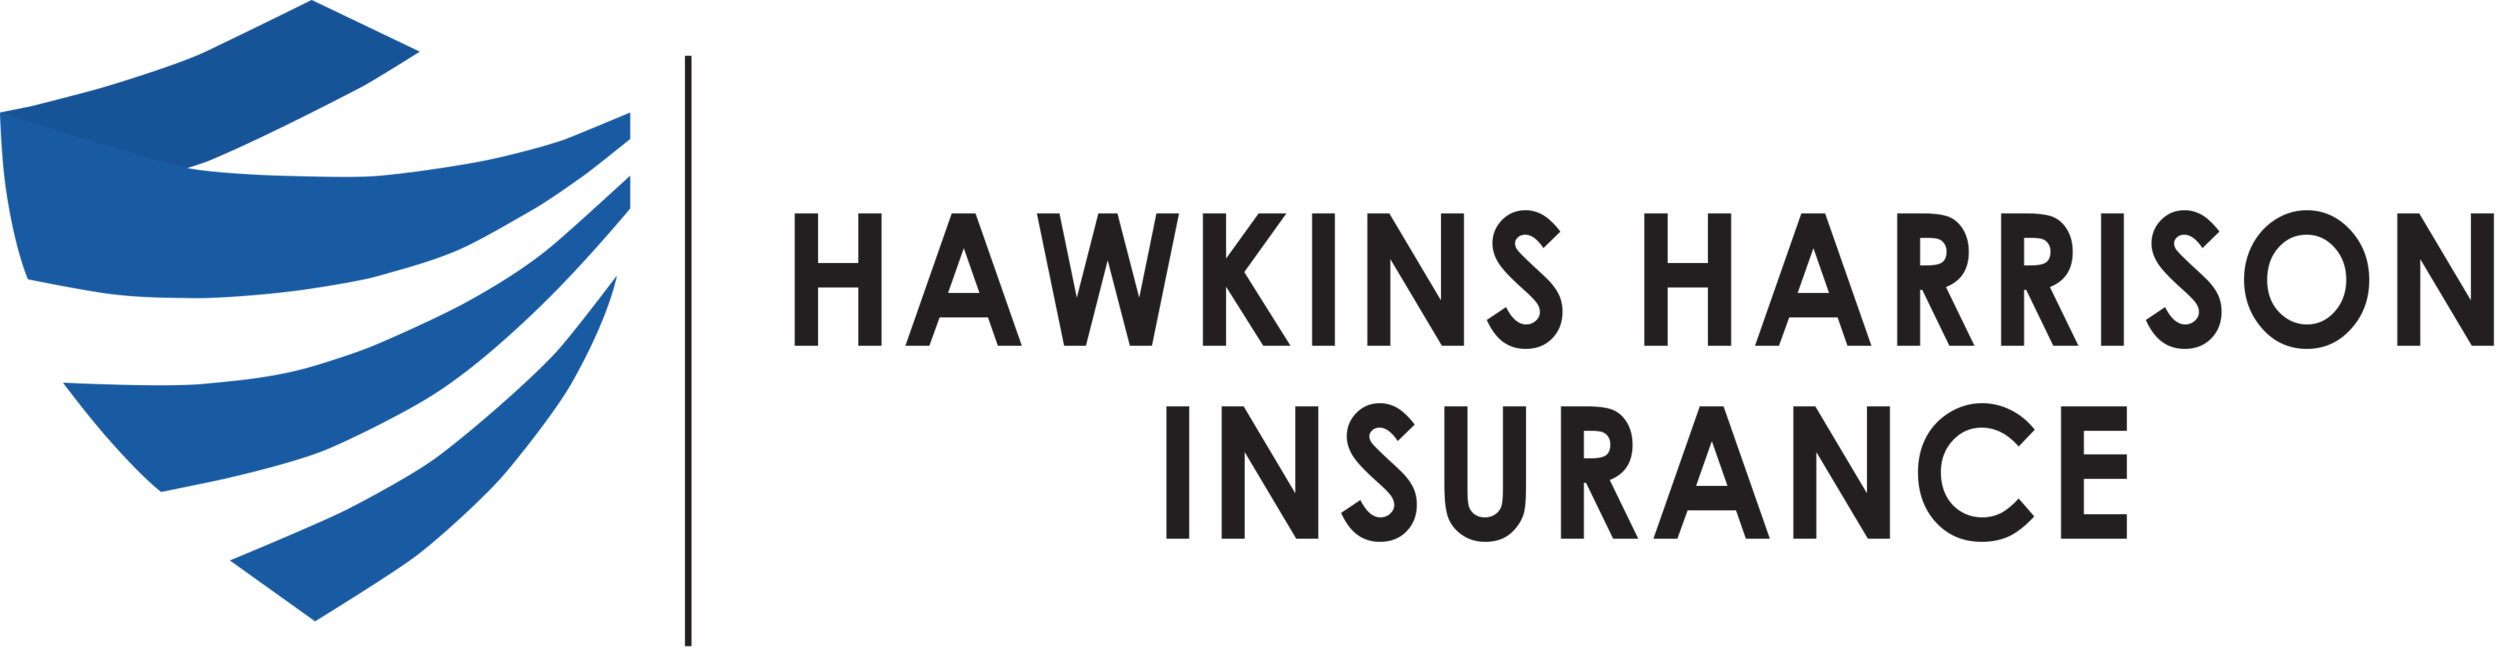 Hawkins Harrison Insurance